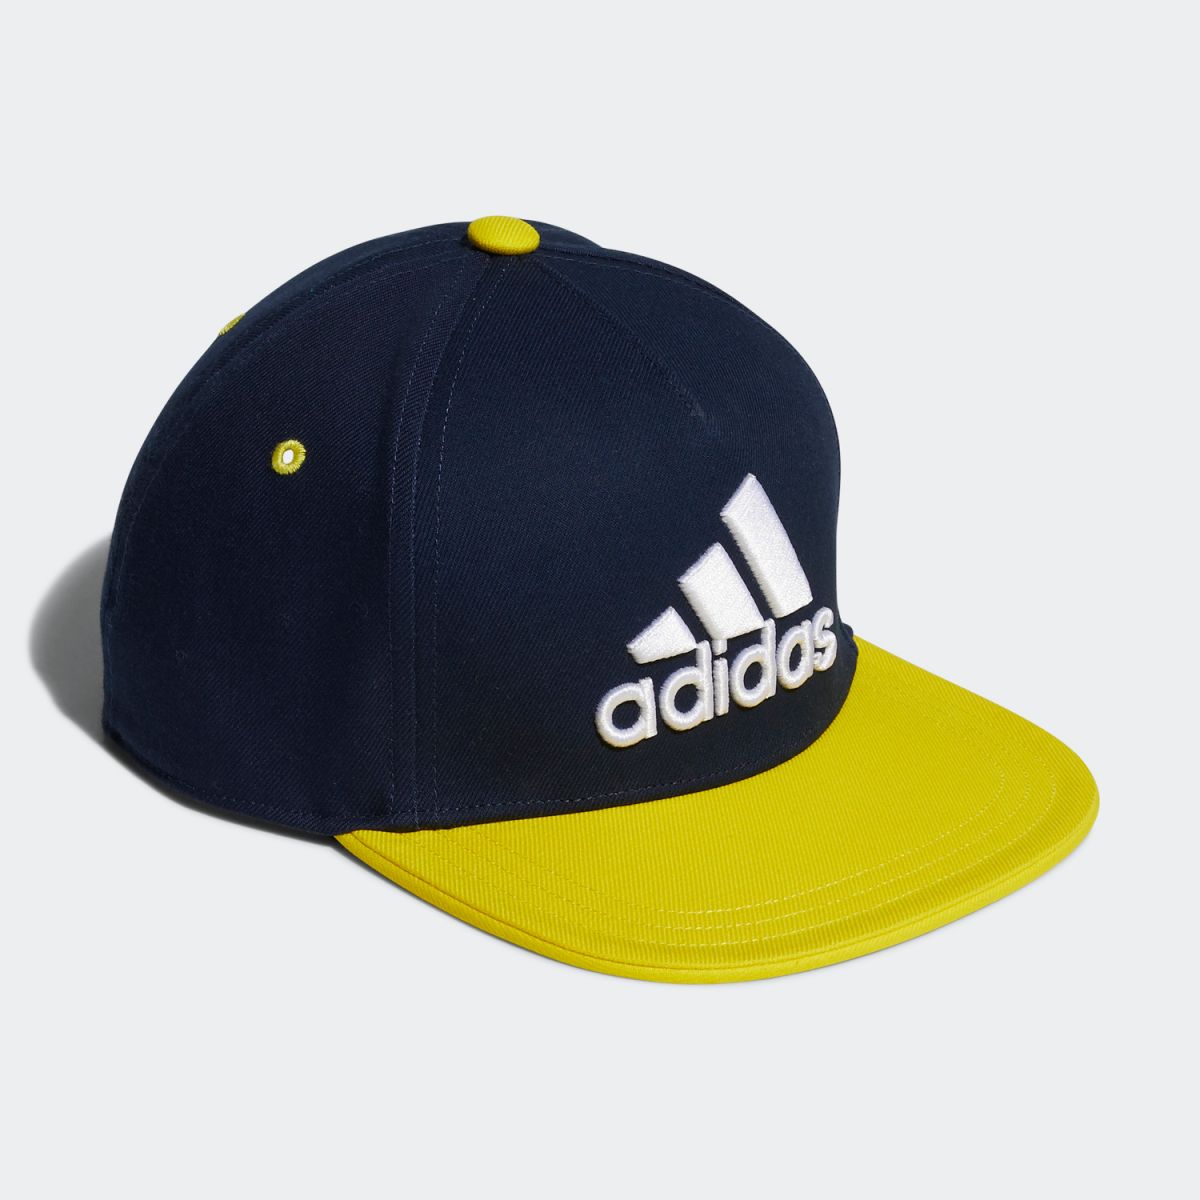 楽天市場 公式 アディダス Adidas ジム トレーニング キャップ Cap レディース メンズ アクセサリー 帽子 キャップ 青 ブルー Gl8647 Adidas Online Shop 楽天市場店